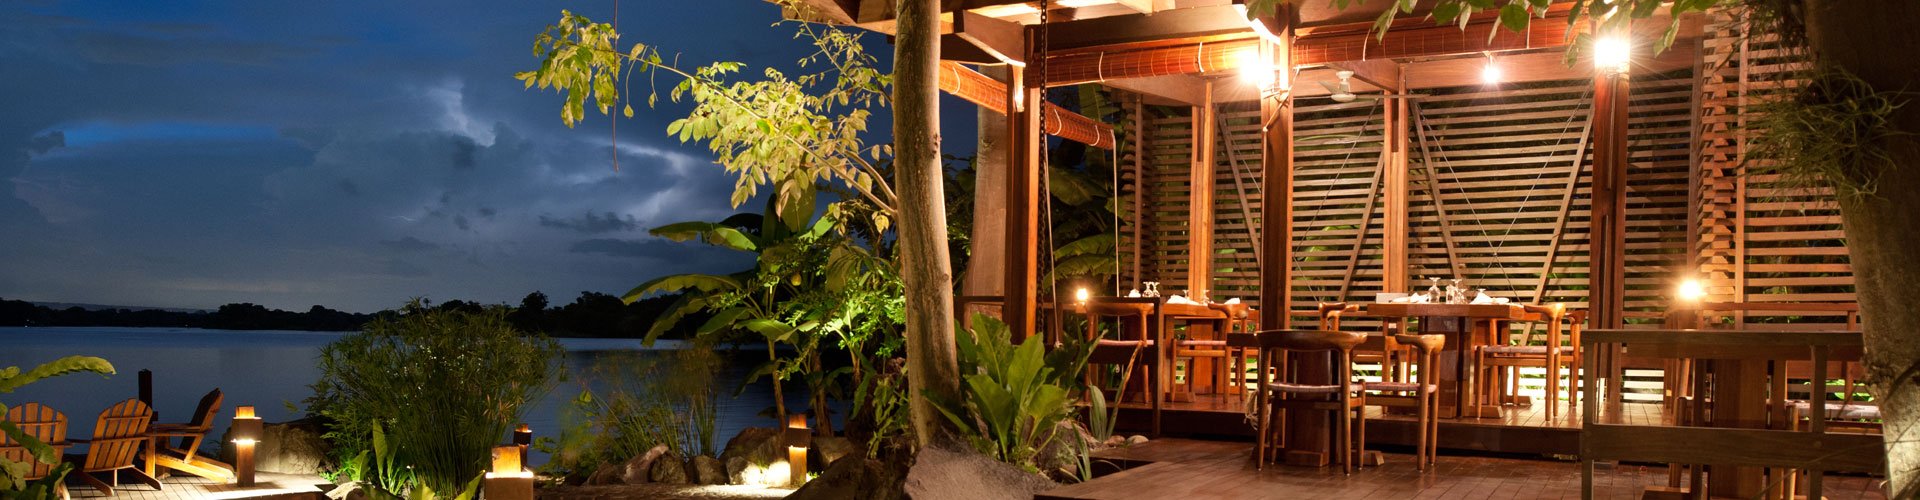 Nicaragua, Jicaro Island Lodge, Restaurant Abendstimmung, Latin America Tours